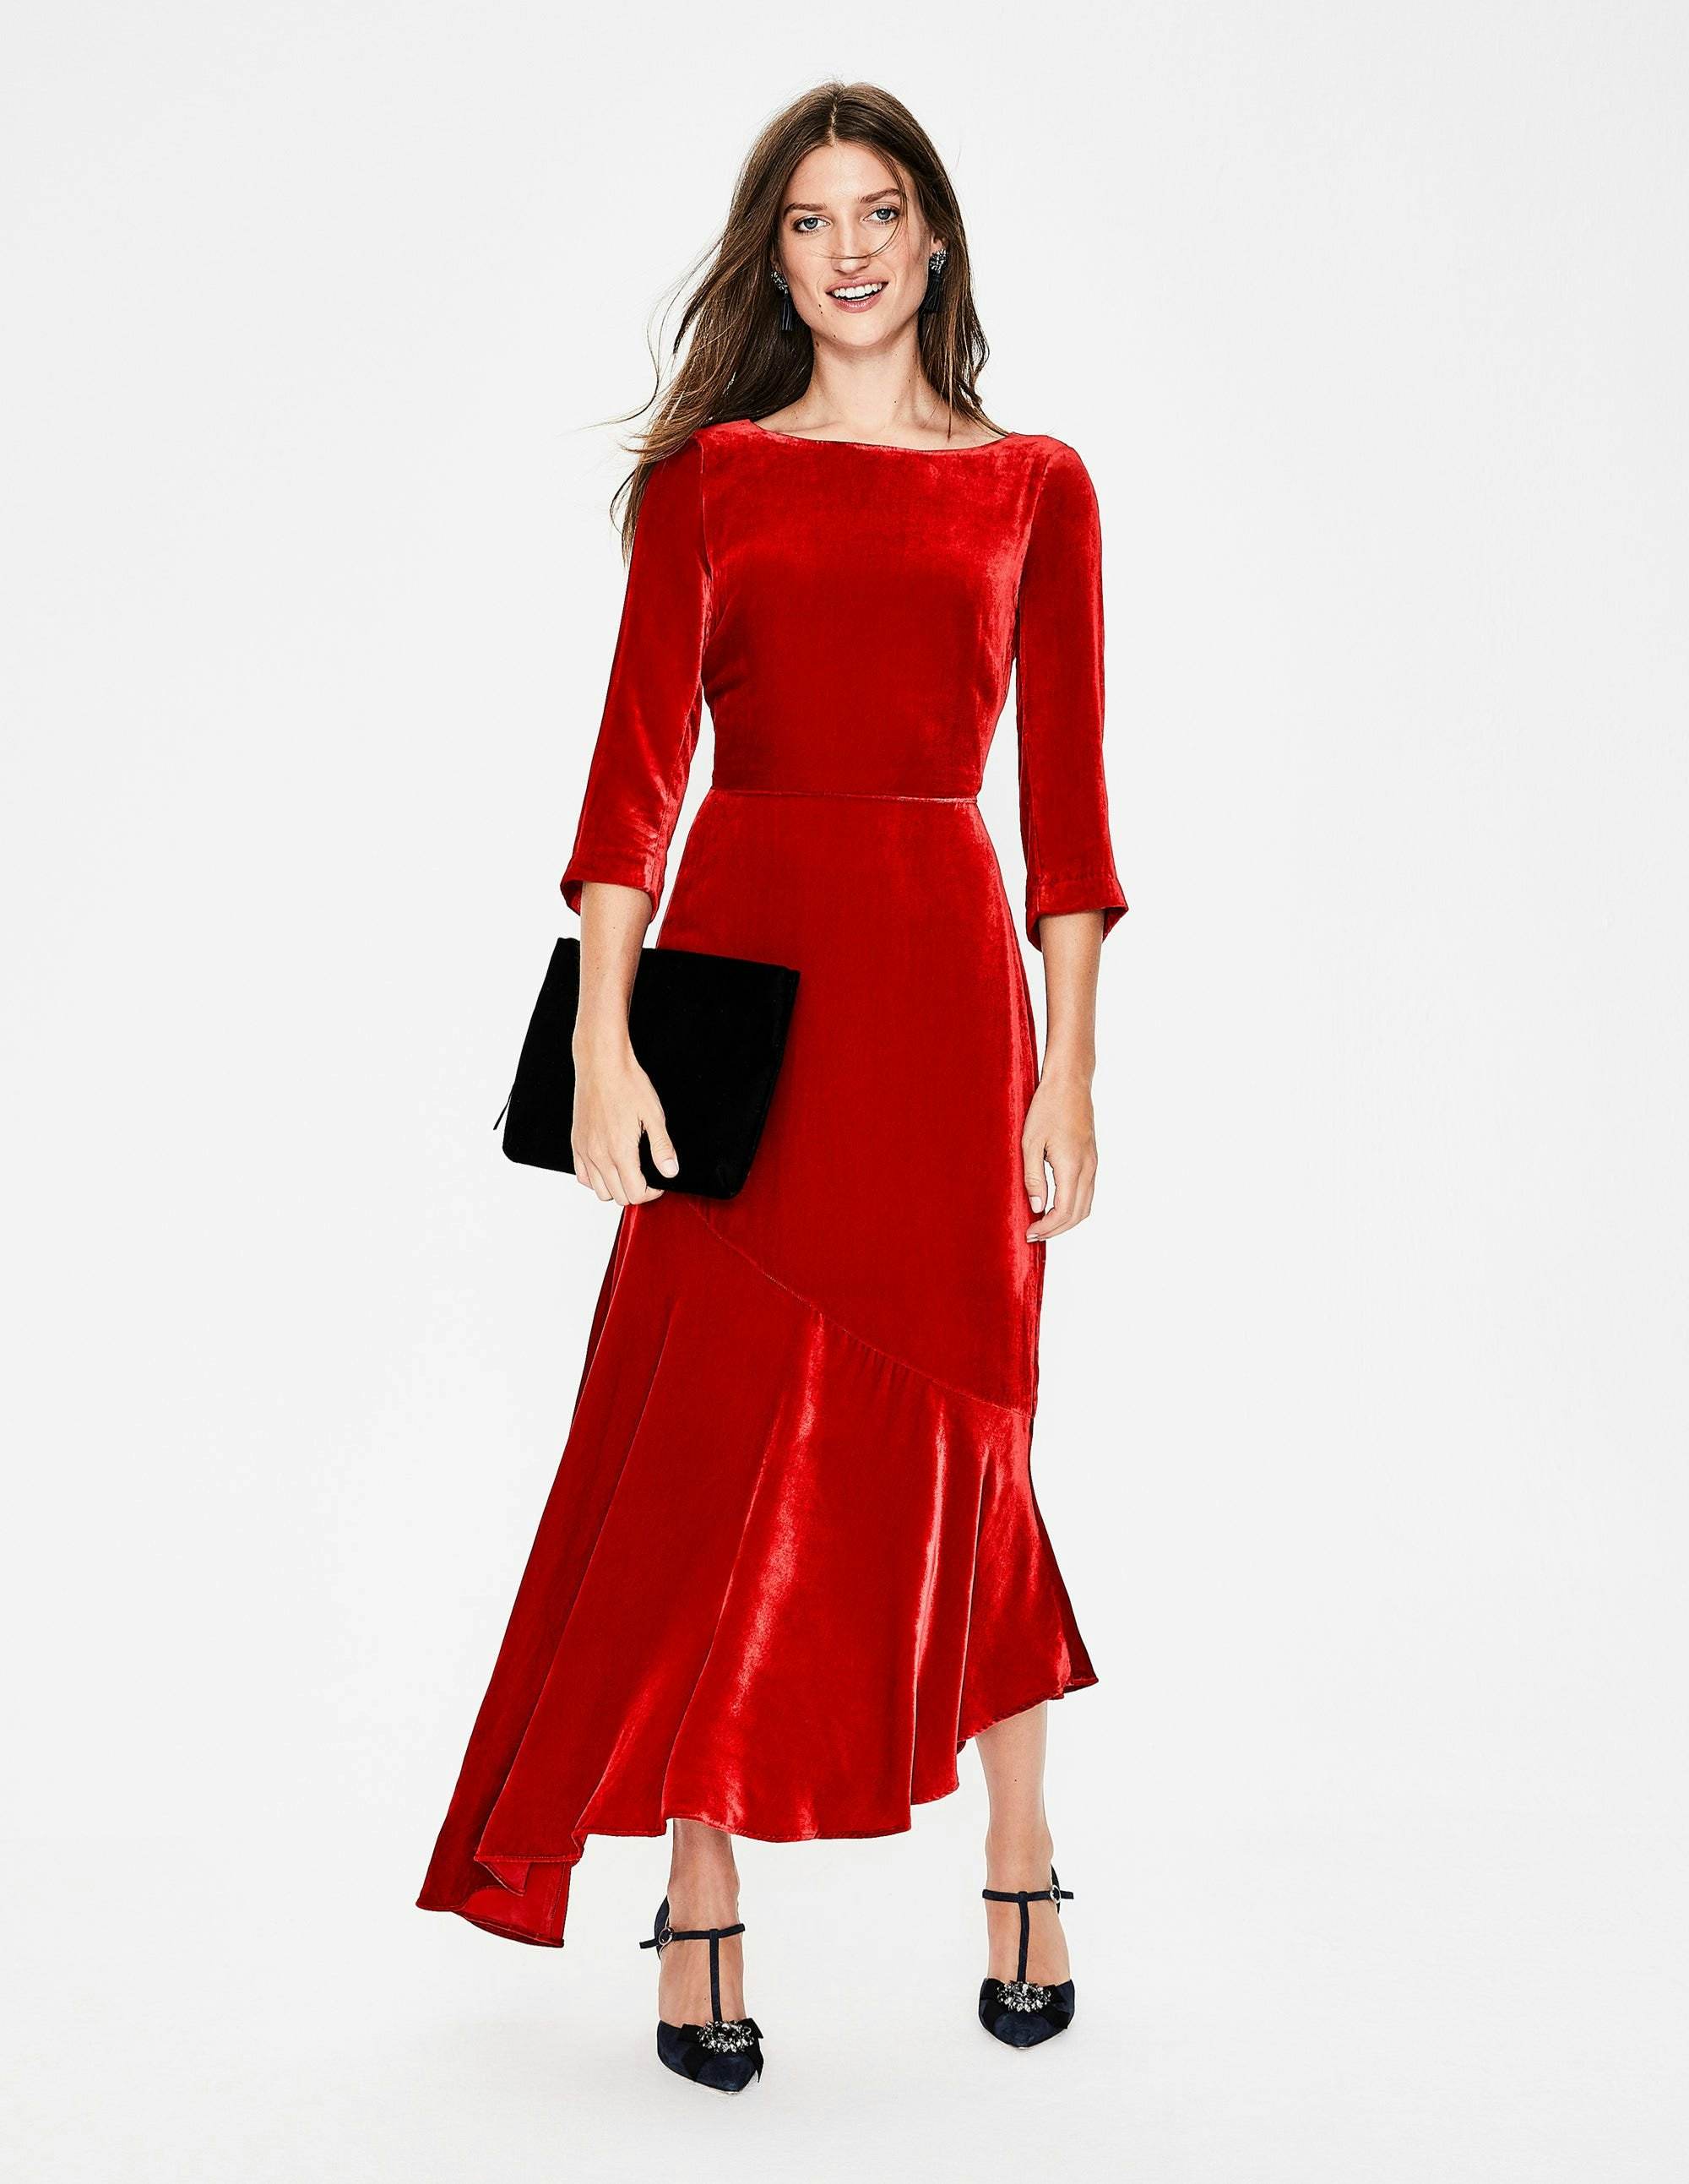 zara woman red dress